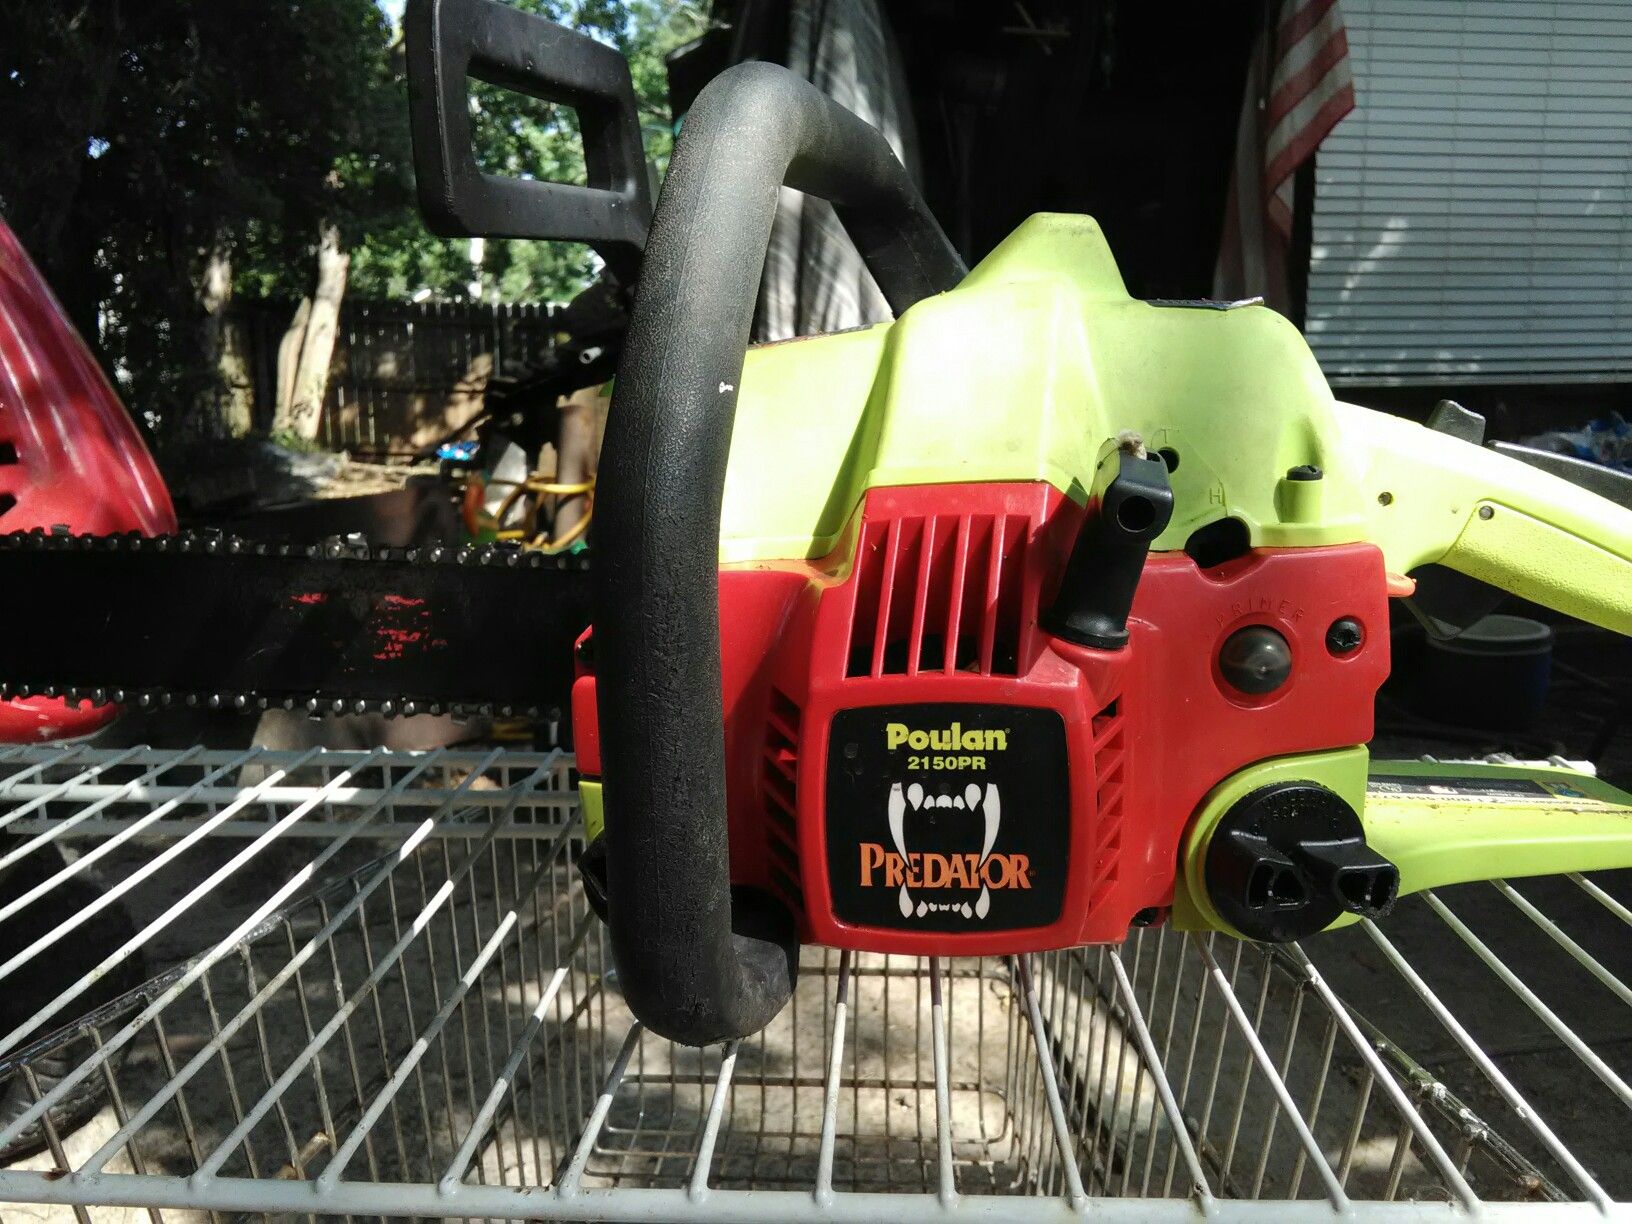 Poulan Predator chainsaw